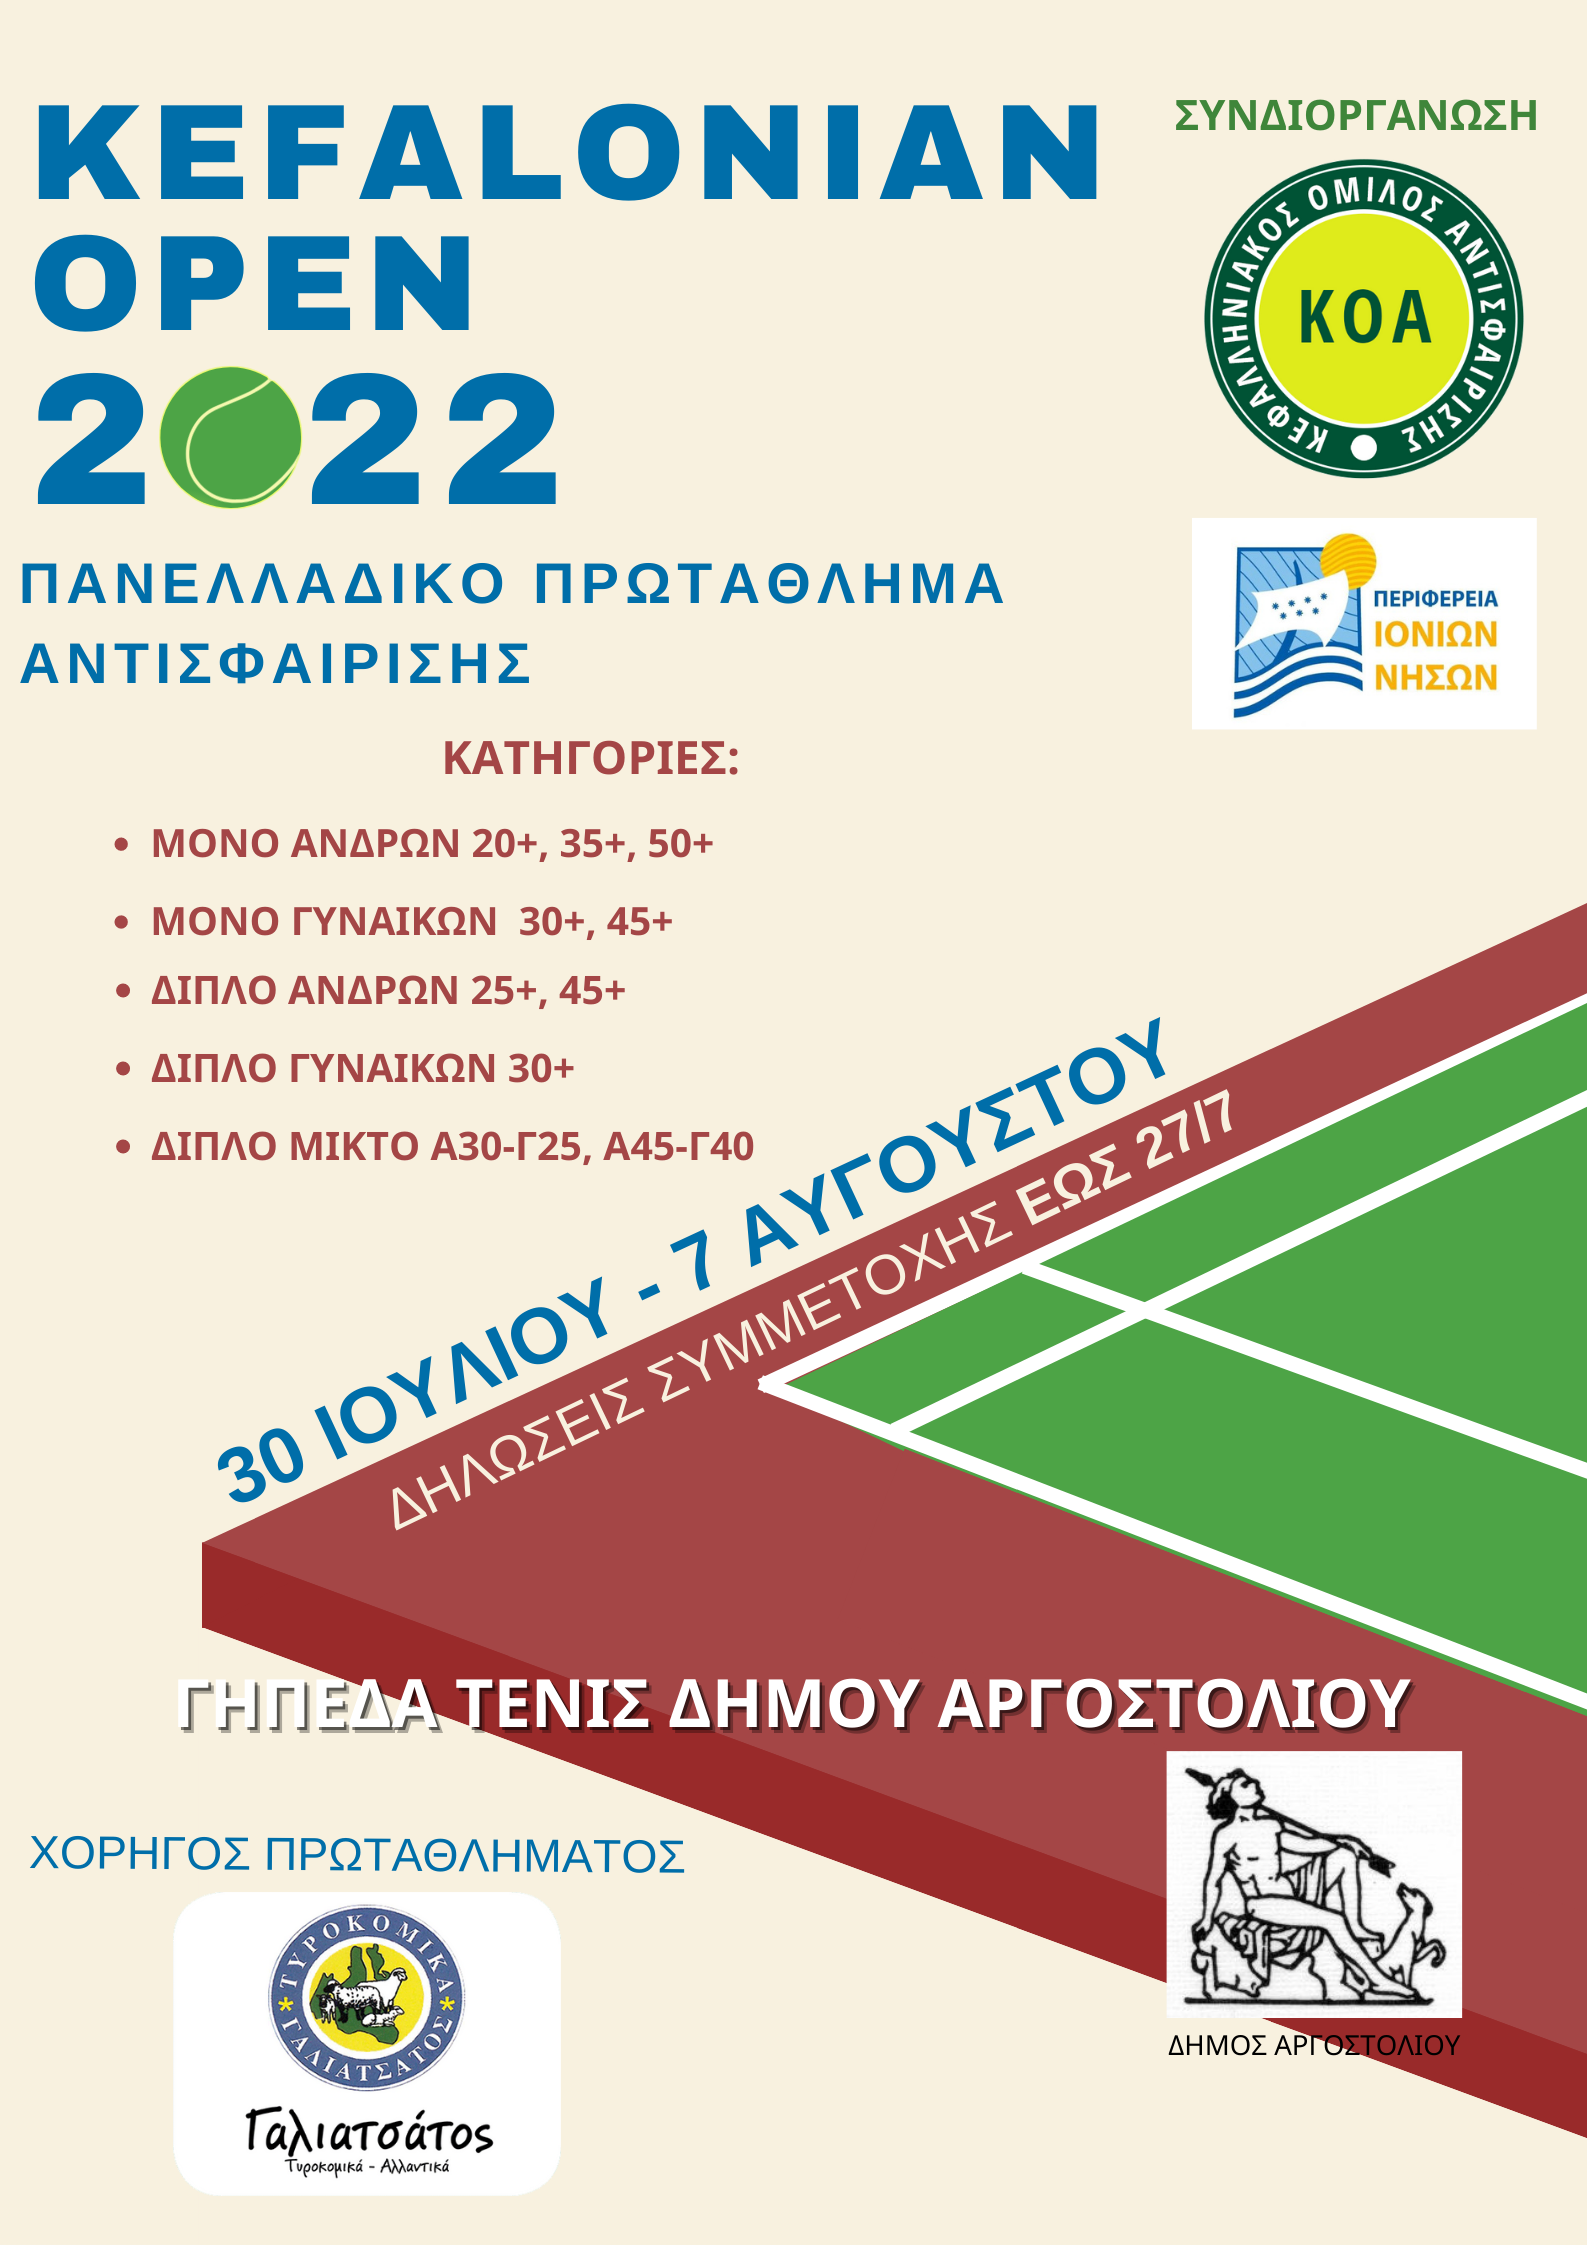 kefalonian open 2022